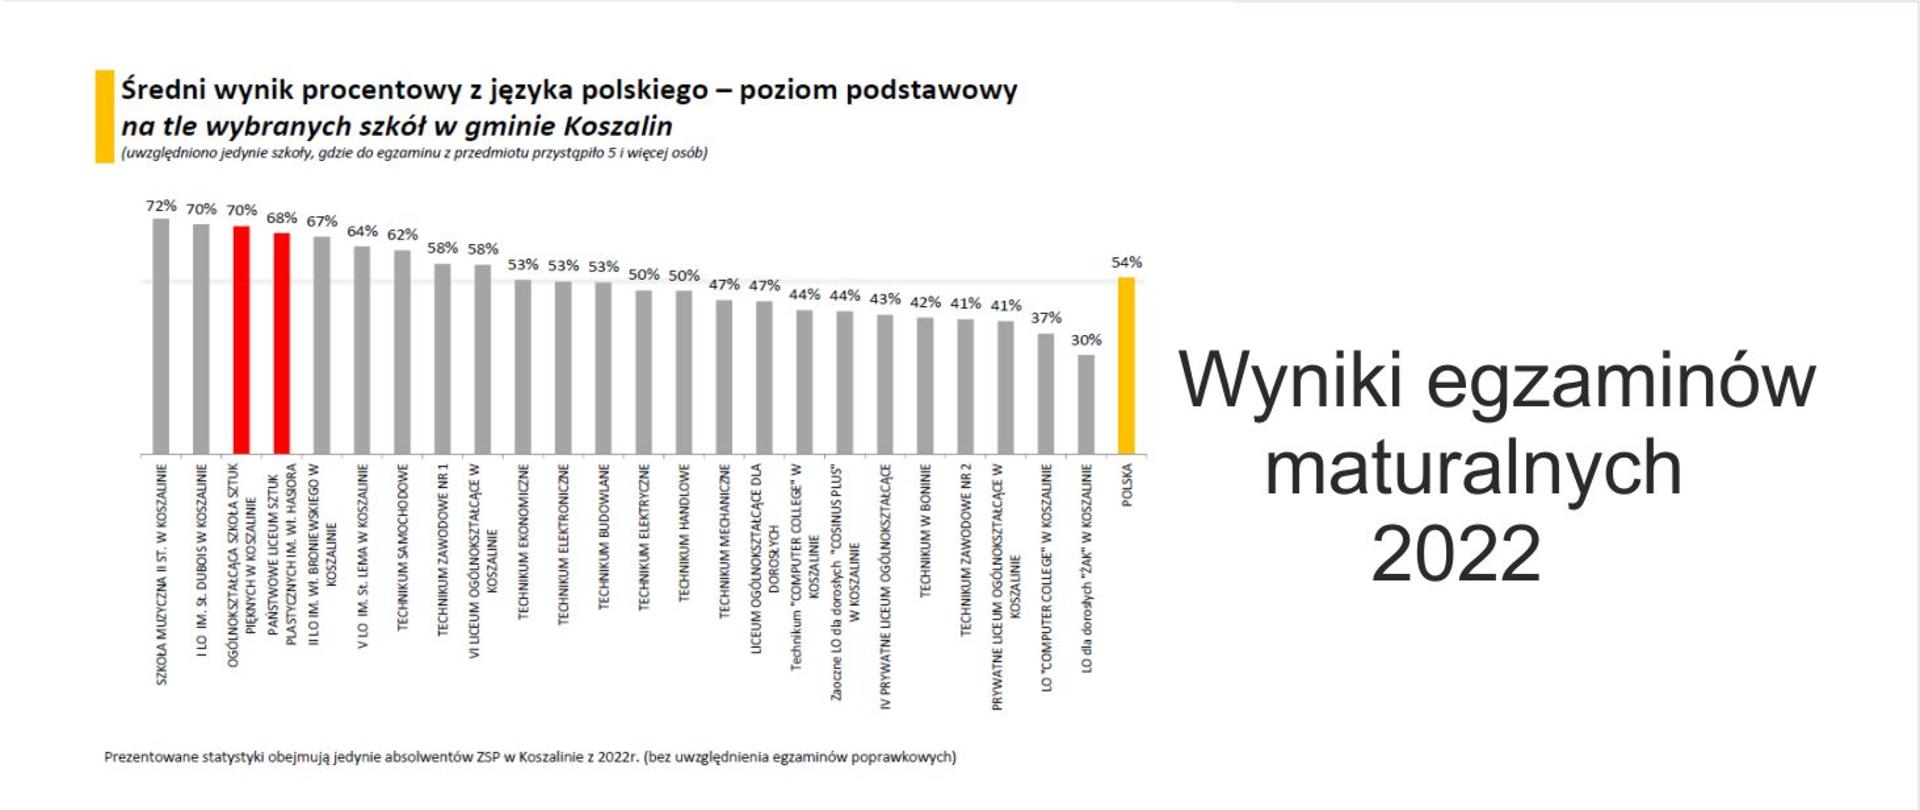 Napis po prawej stronie - Wyniki egzaminów maturalnych 2022, po lewej stronie przykładowy wykres słupkowy średniego wyniku procentowego z języka polskiego - poziom podstawowy na tle wybranych szkół w gminie Koszalin. 